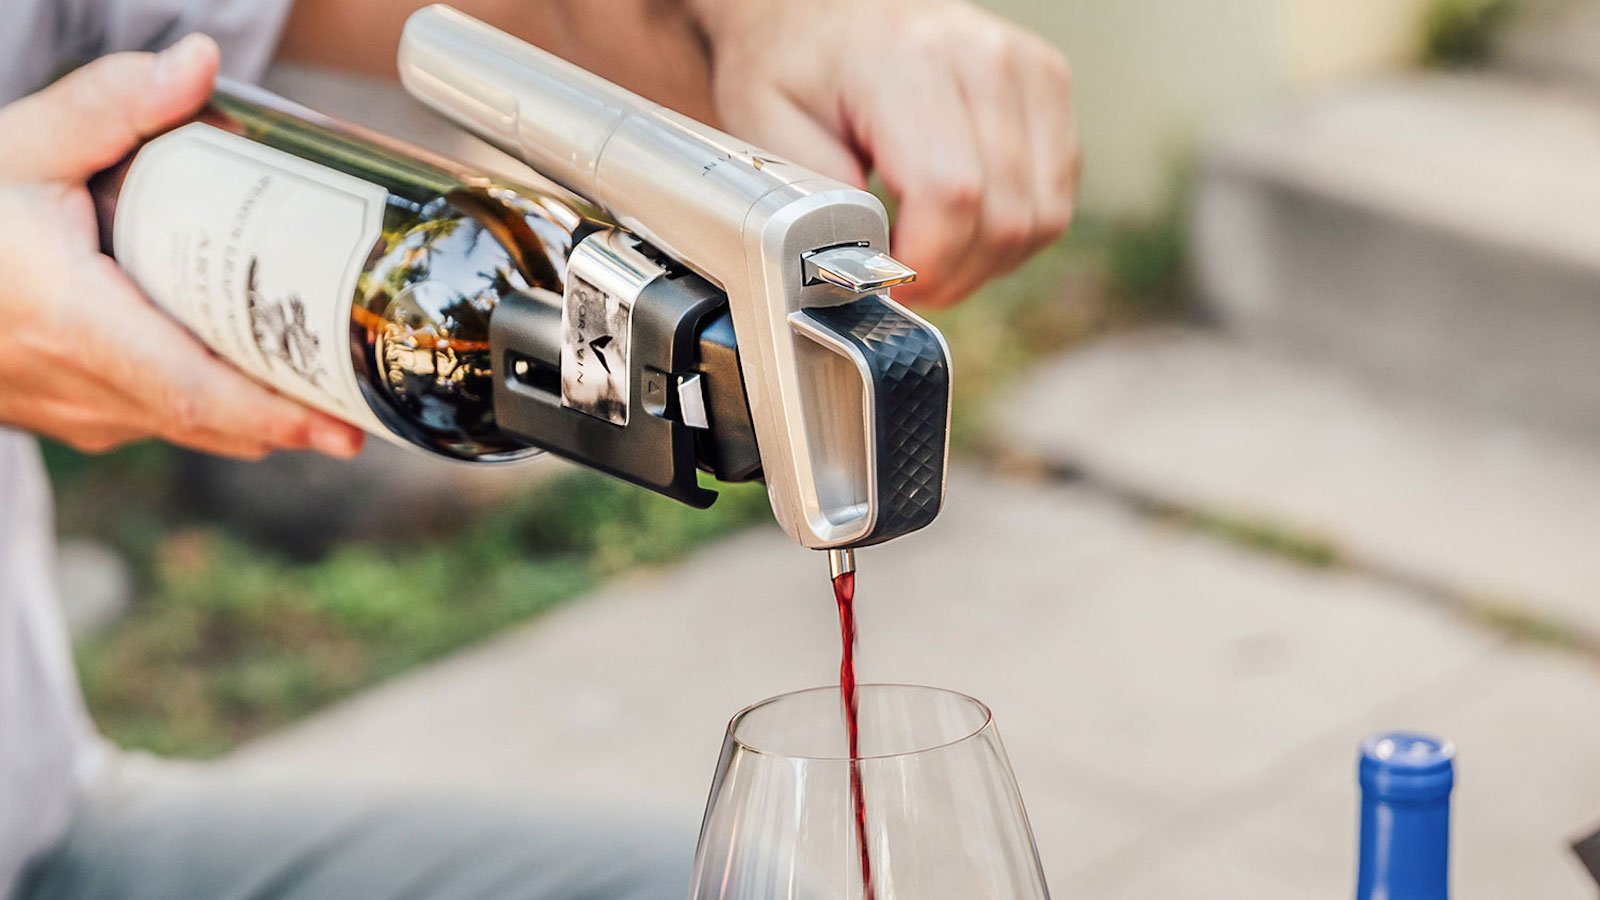 Coravin Model Six wine pourer lets you conveniently pour alcohol